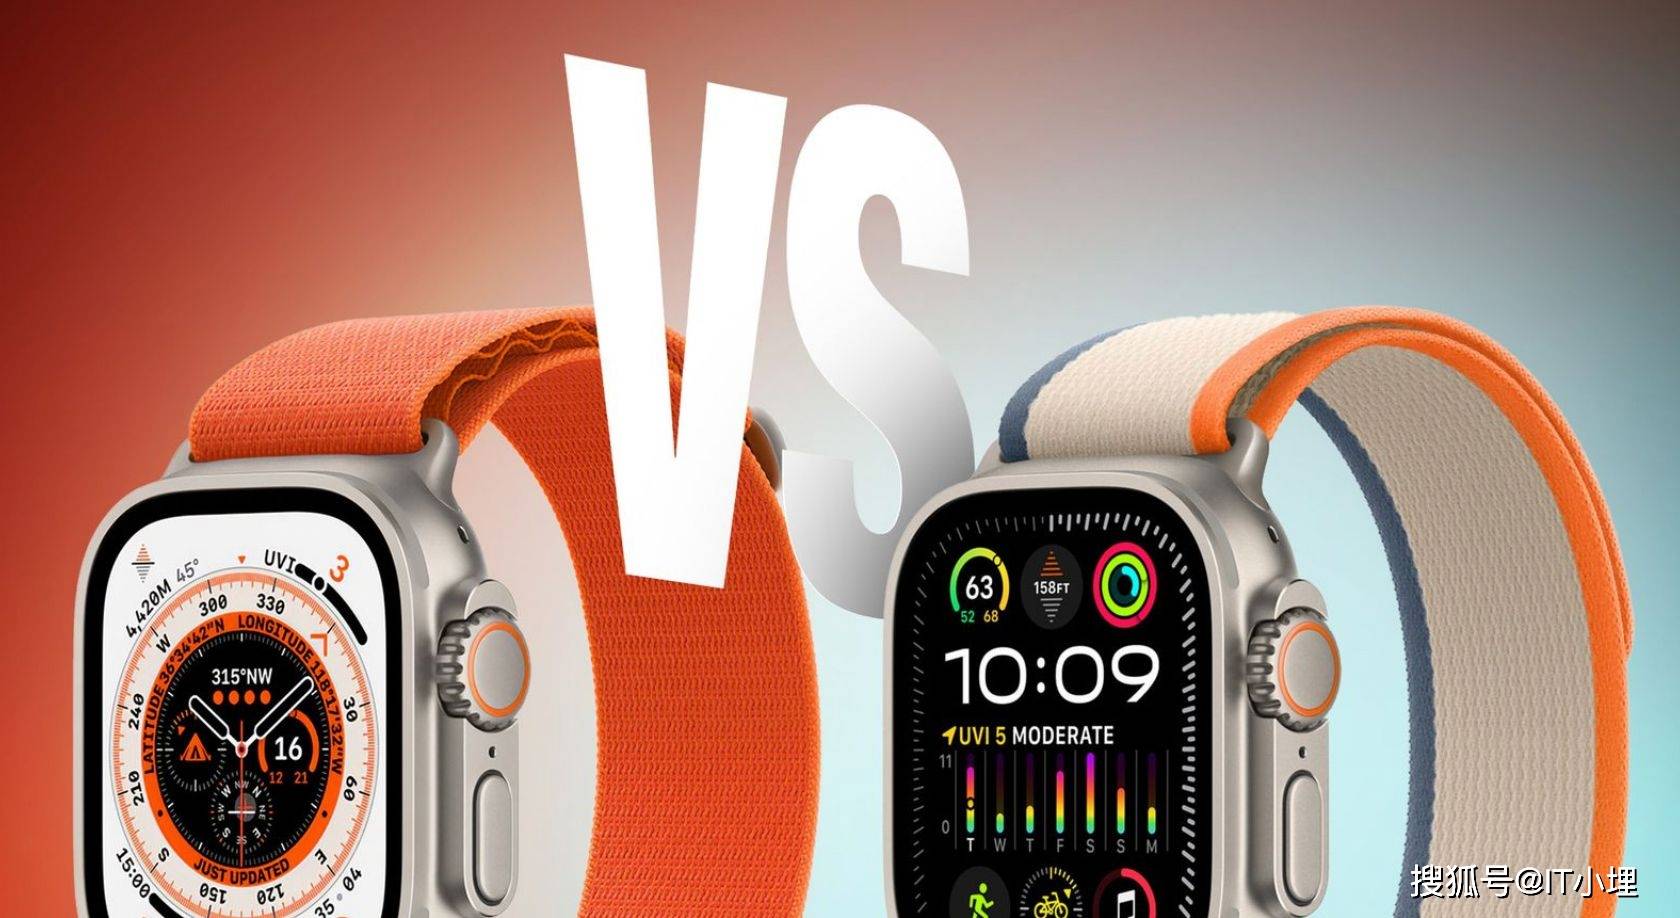 Apple watch ultra 第1世代よろしくお願いします - 腕時計(デジタル)